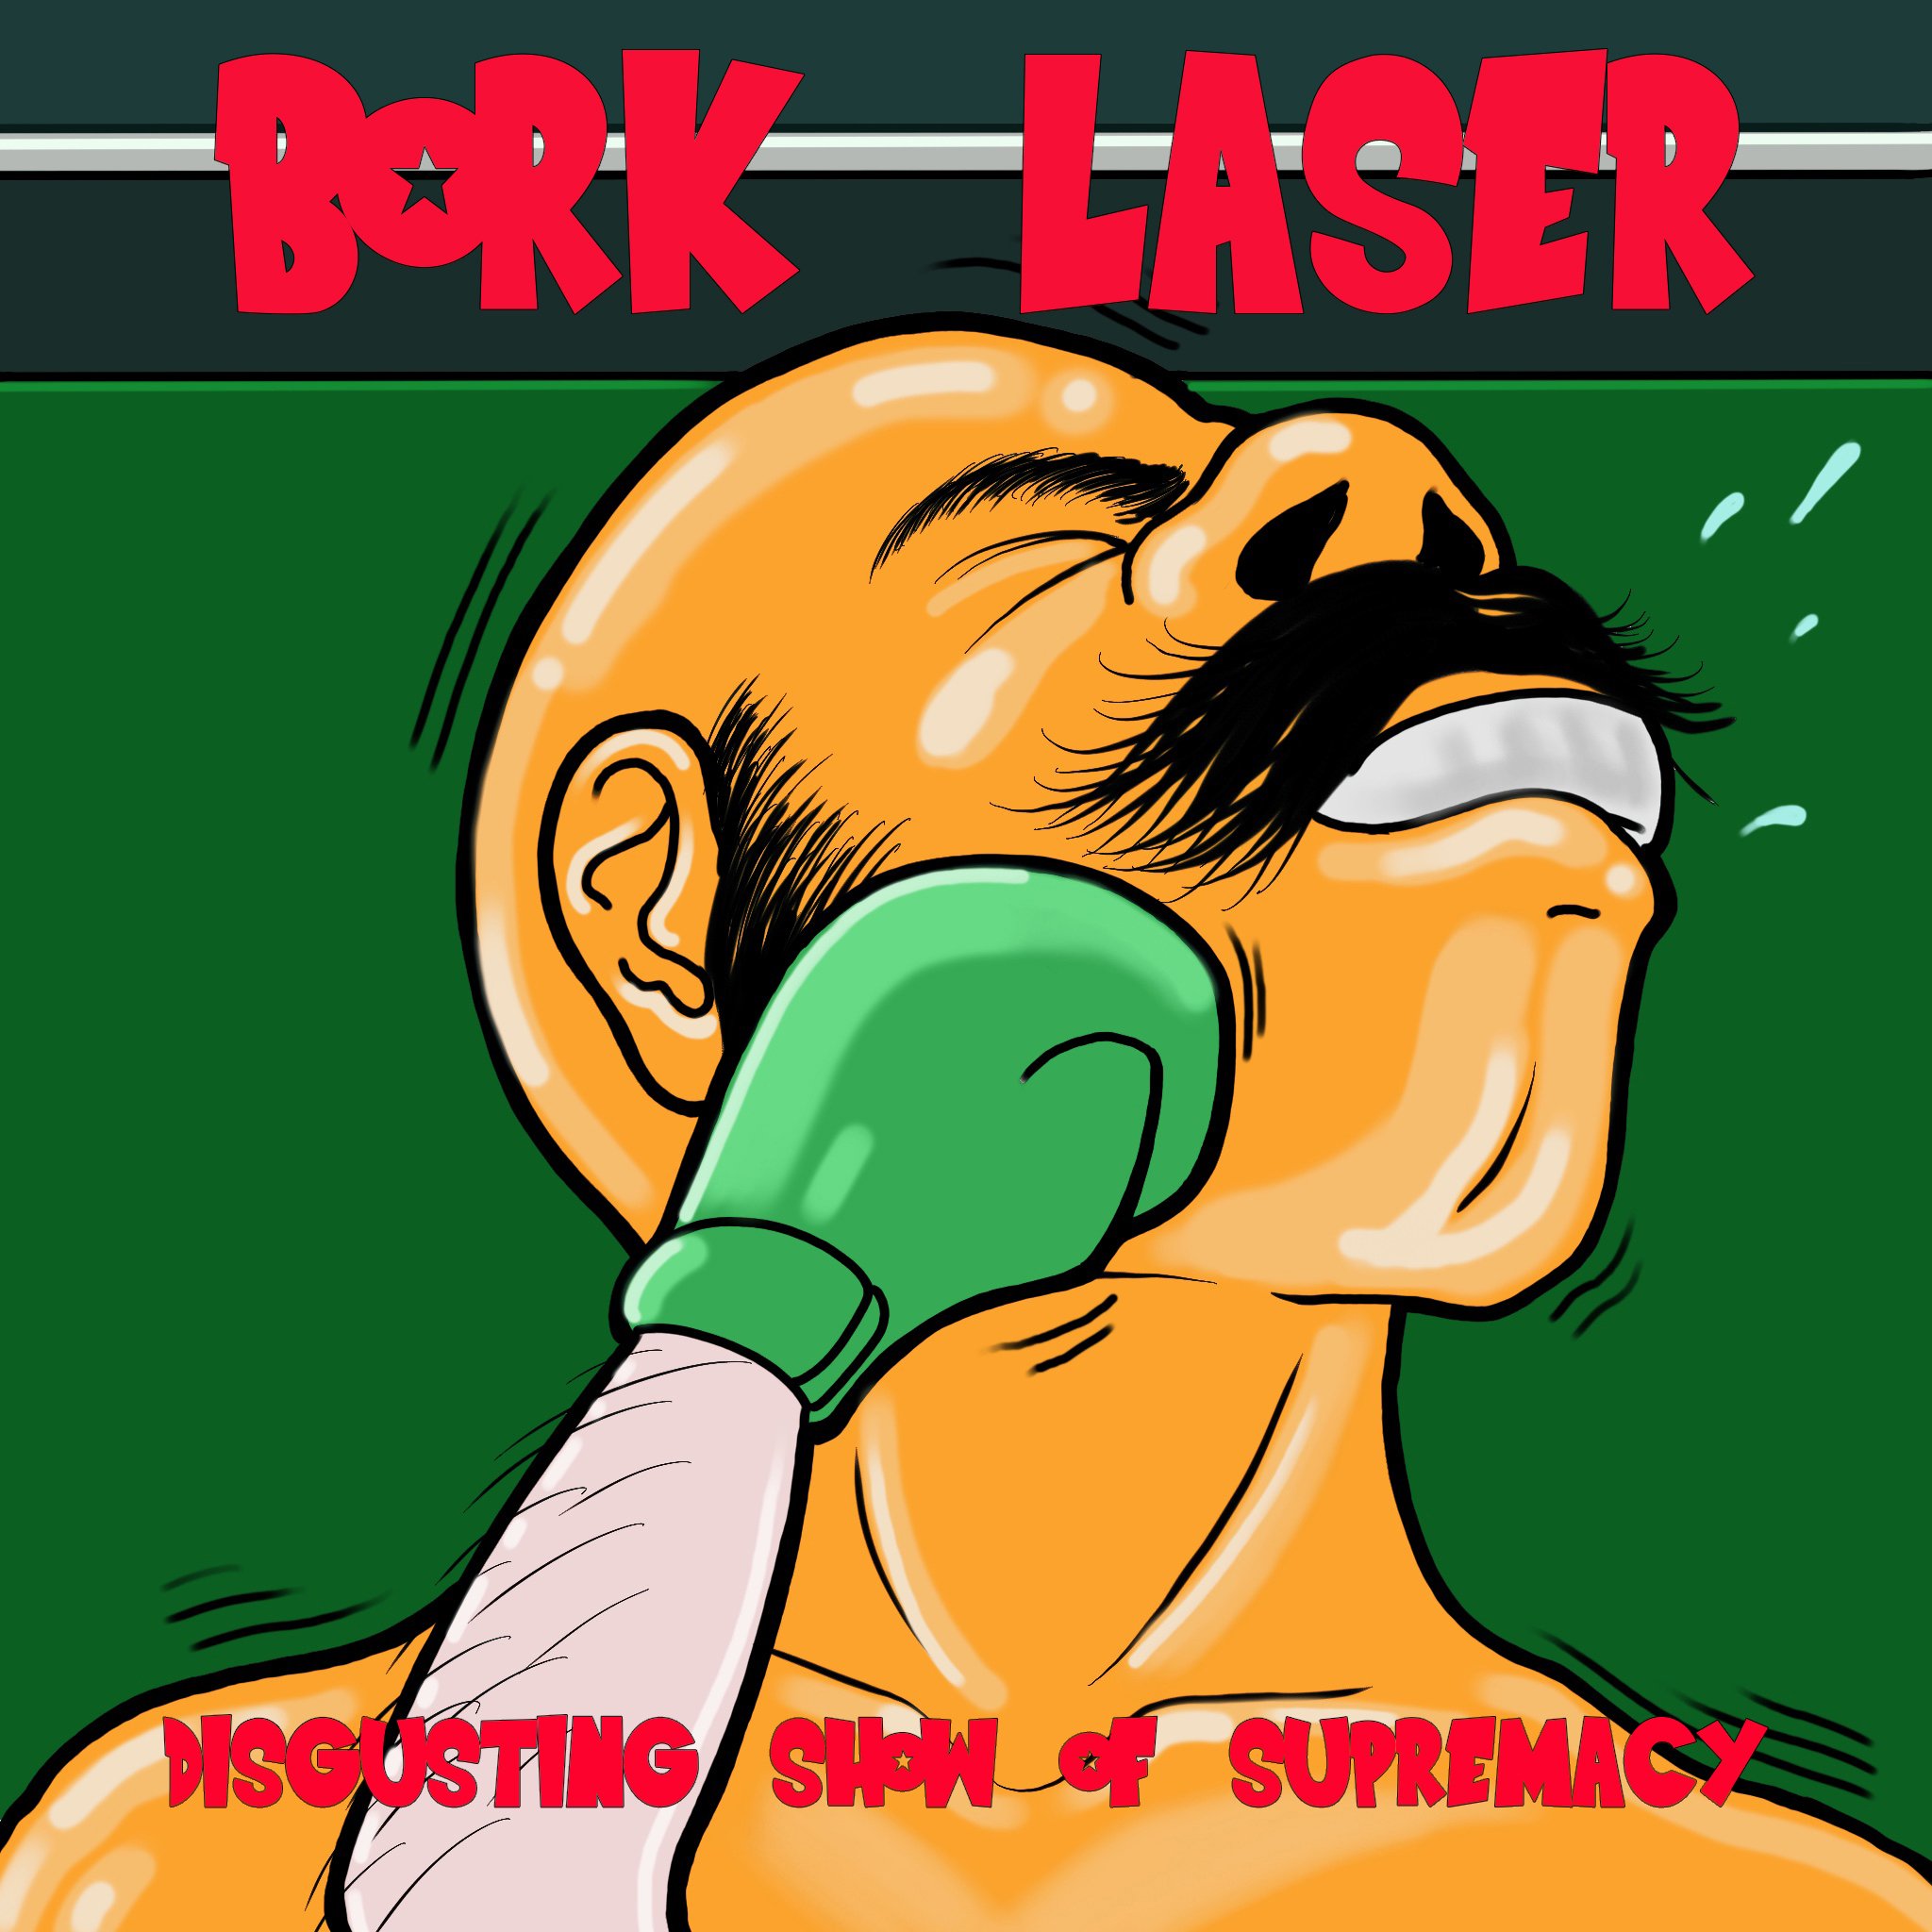 Bork Laser | ReverbNation